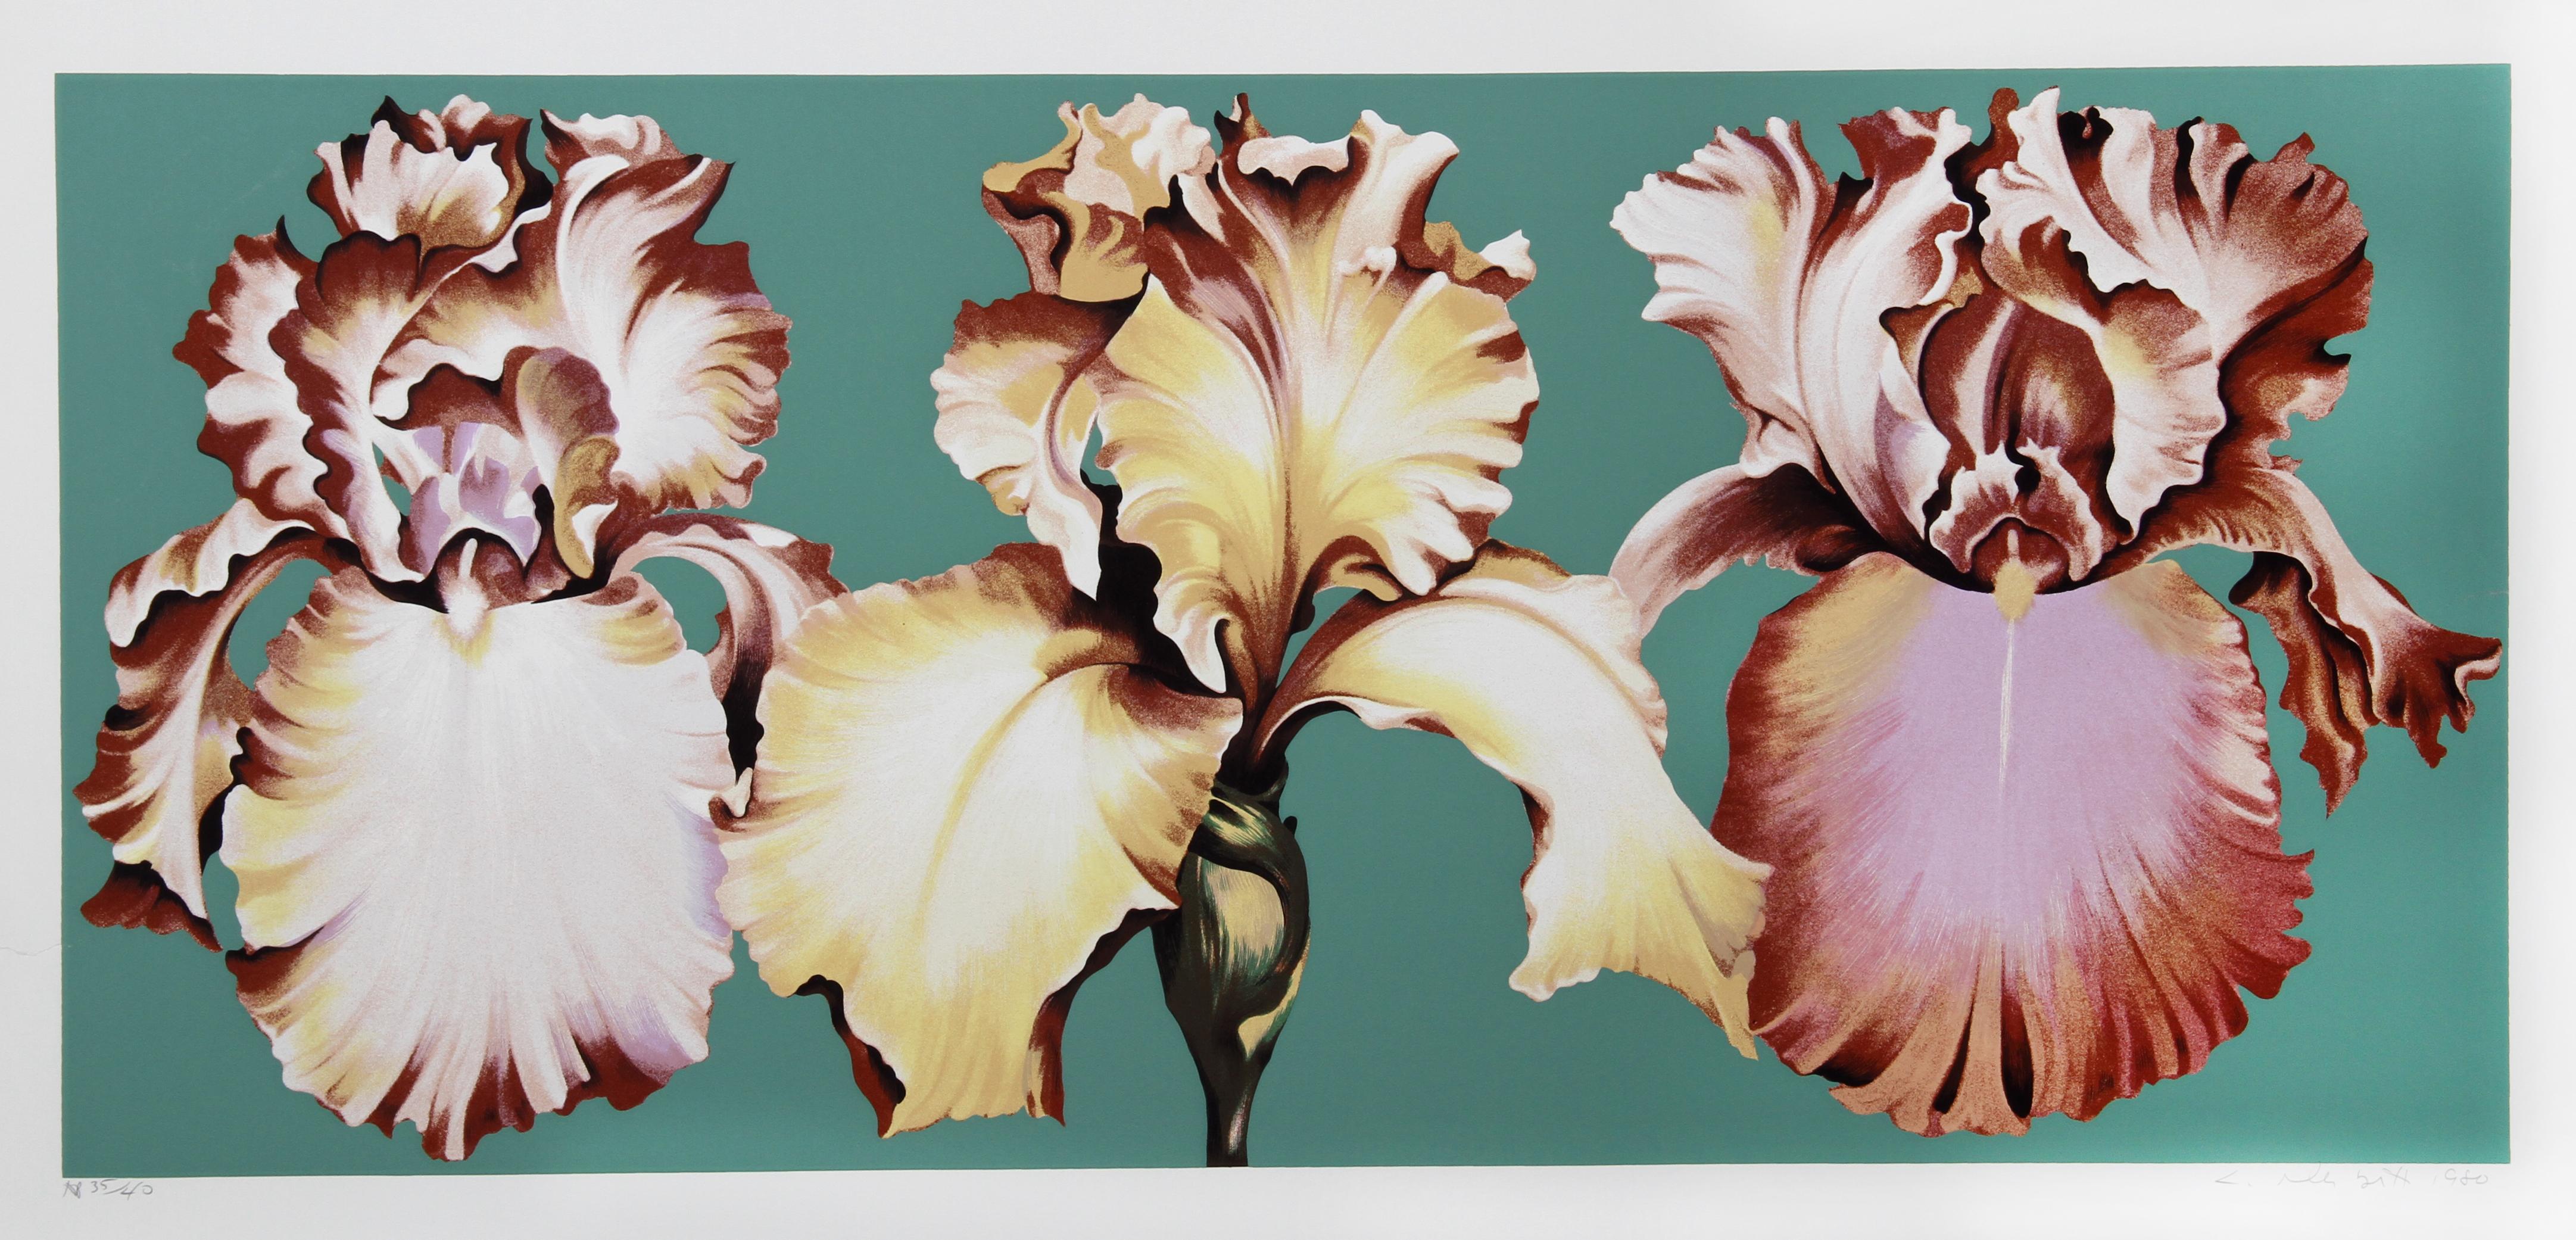 Drei Irisen auf Grün, geblümter Siebdruck von Lowell Nesbitt